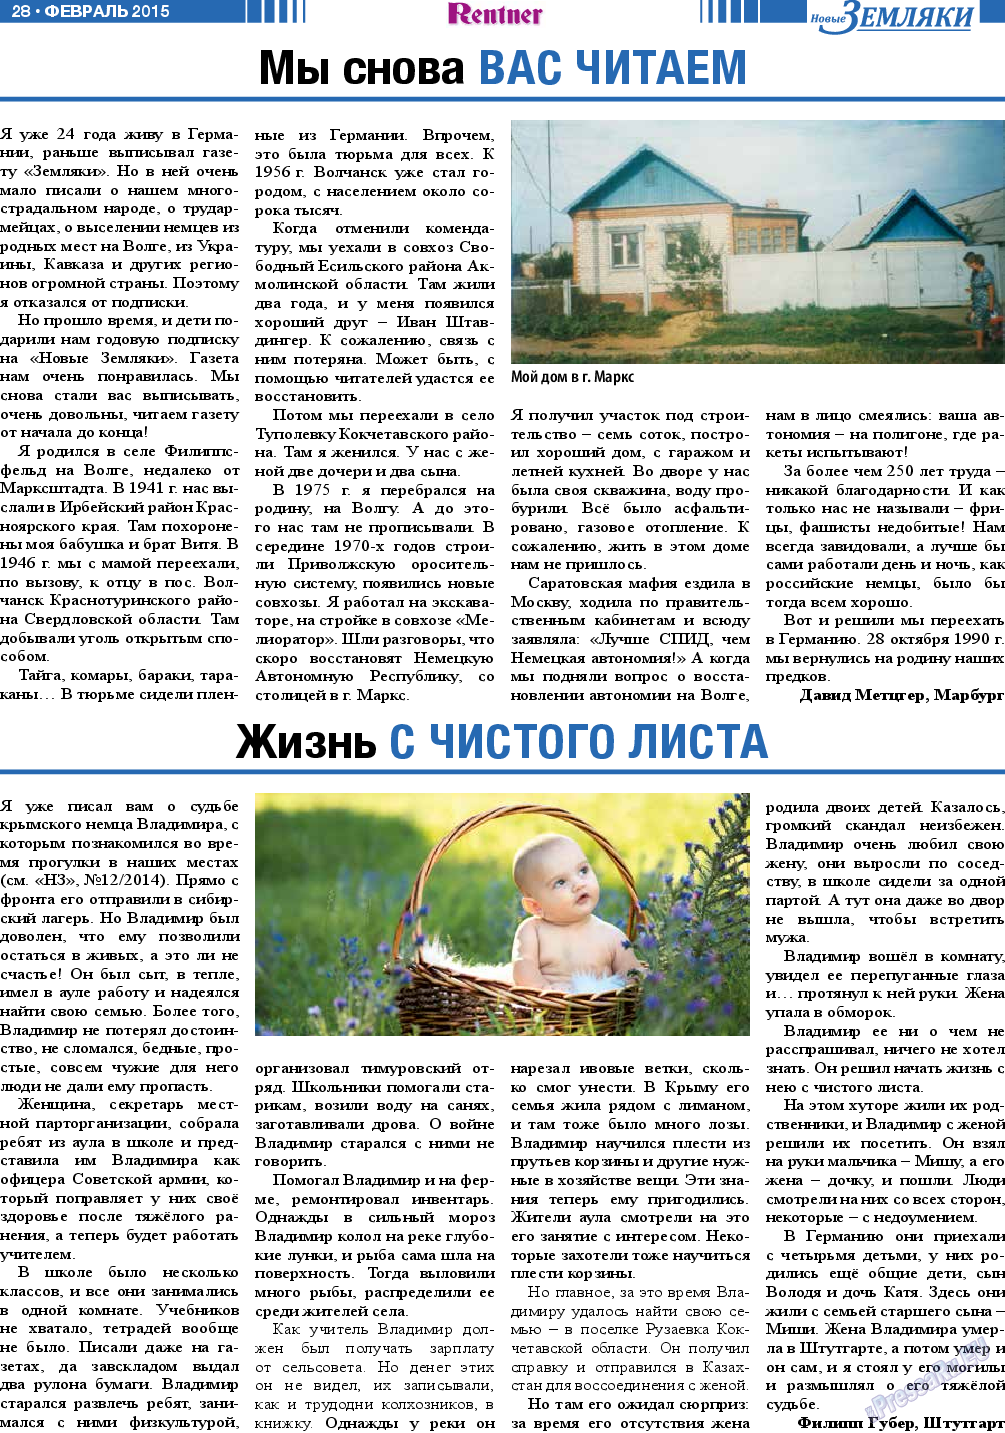 Новые Земляки, газета. 2015 №2 стр.28